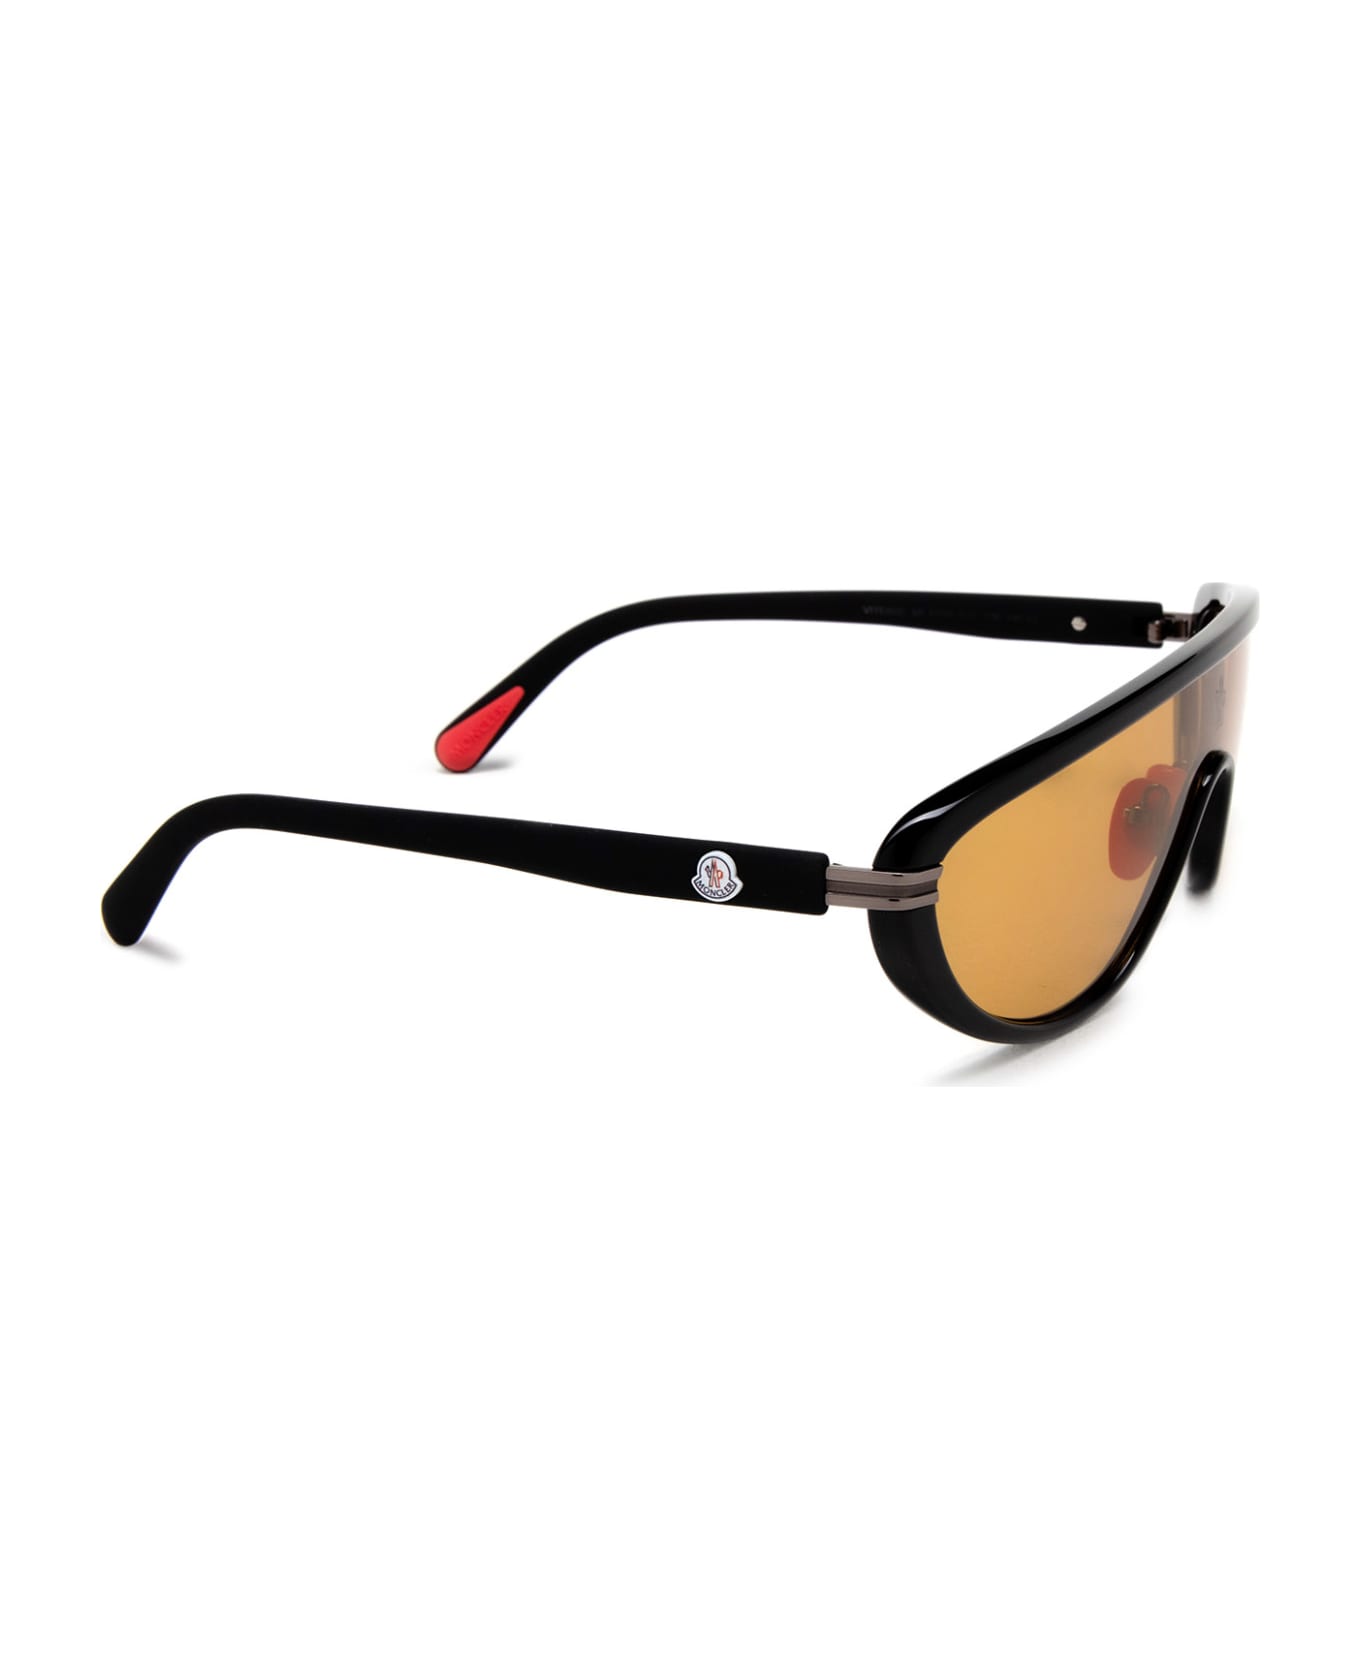 Moncler Eyewear Ml0239 Shiny Black Sunglasses - Shiny Black